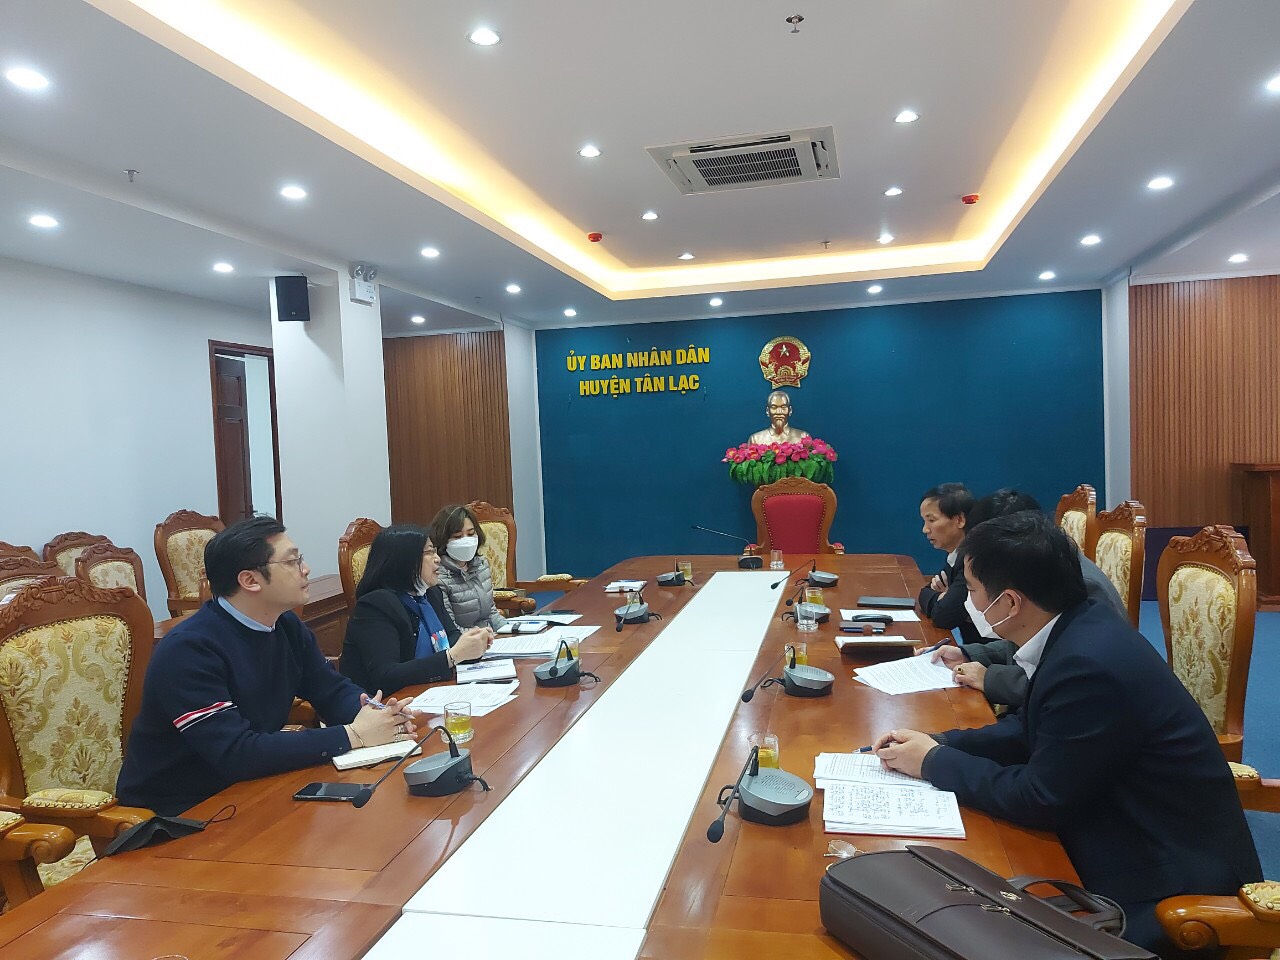 Phỏng vấn Phó chủ tịch huyện Tân Lạc, tỉnh Hoà Bình